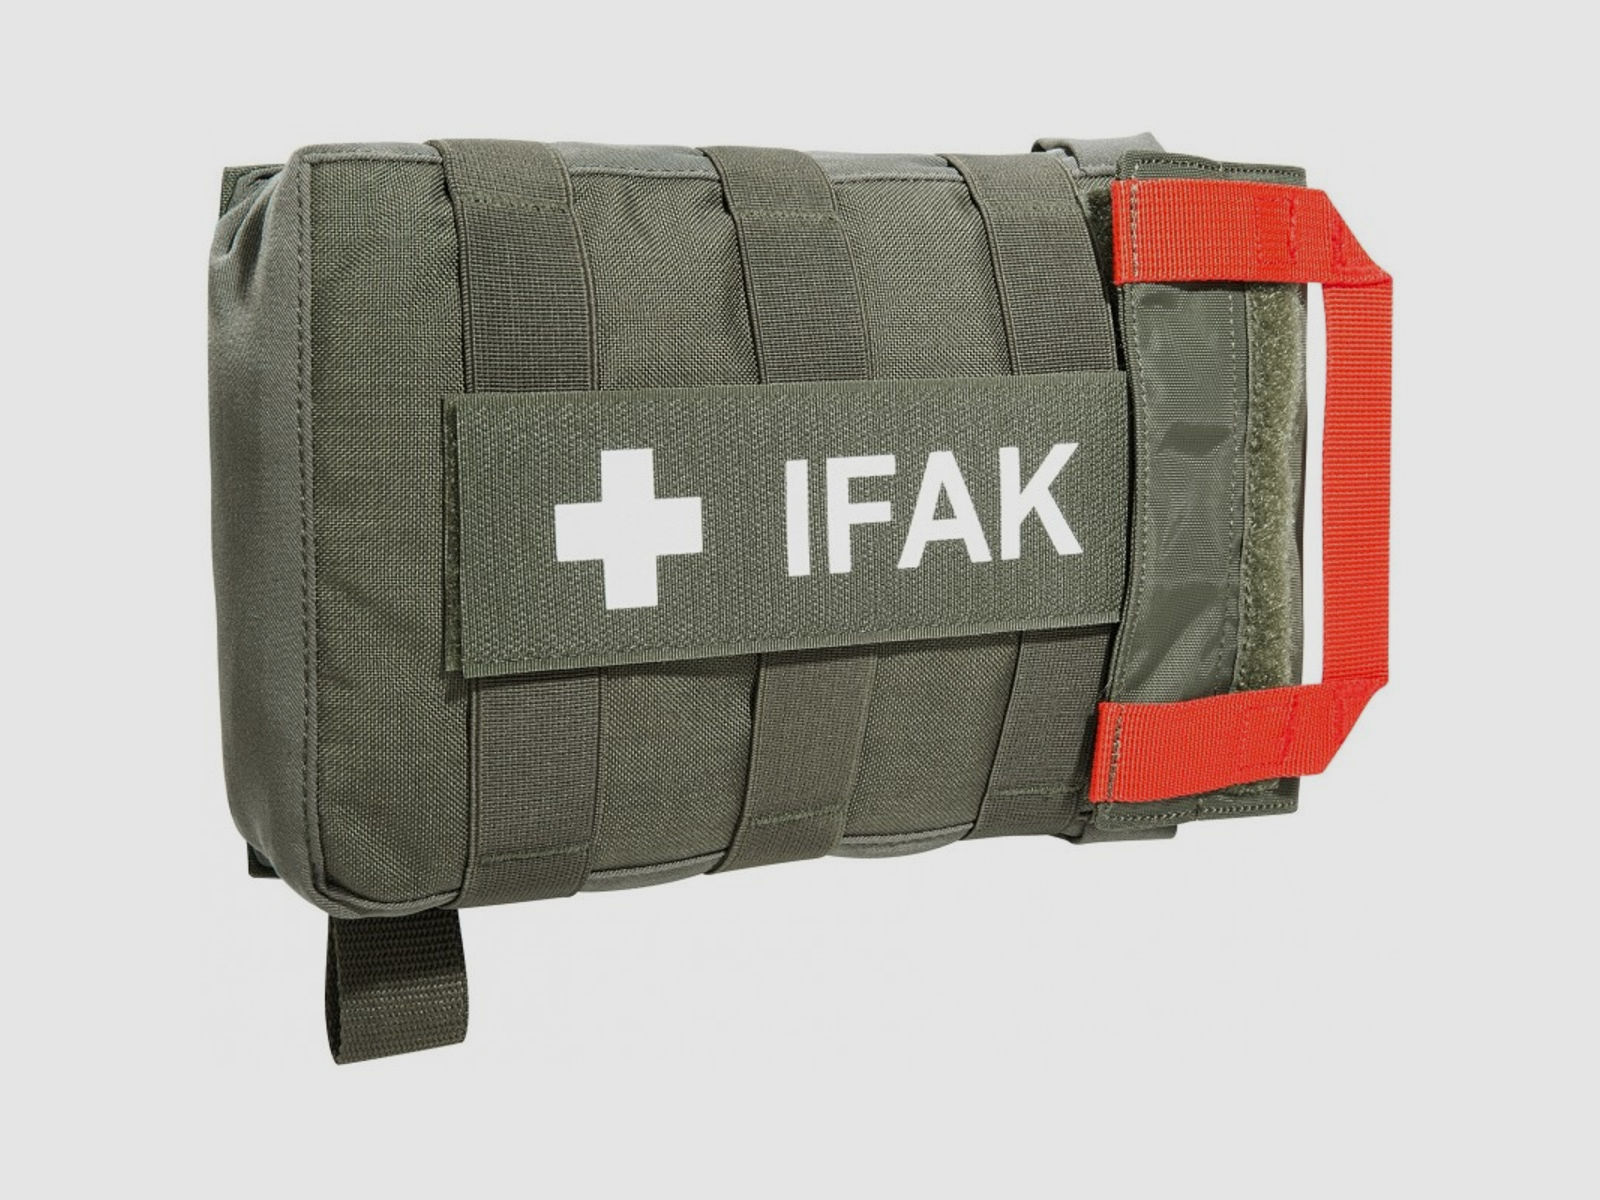 Tasmanian Tiger TT IFAK Pouch VL L IRR First Aid Kit